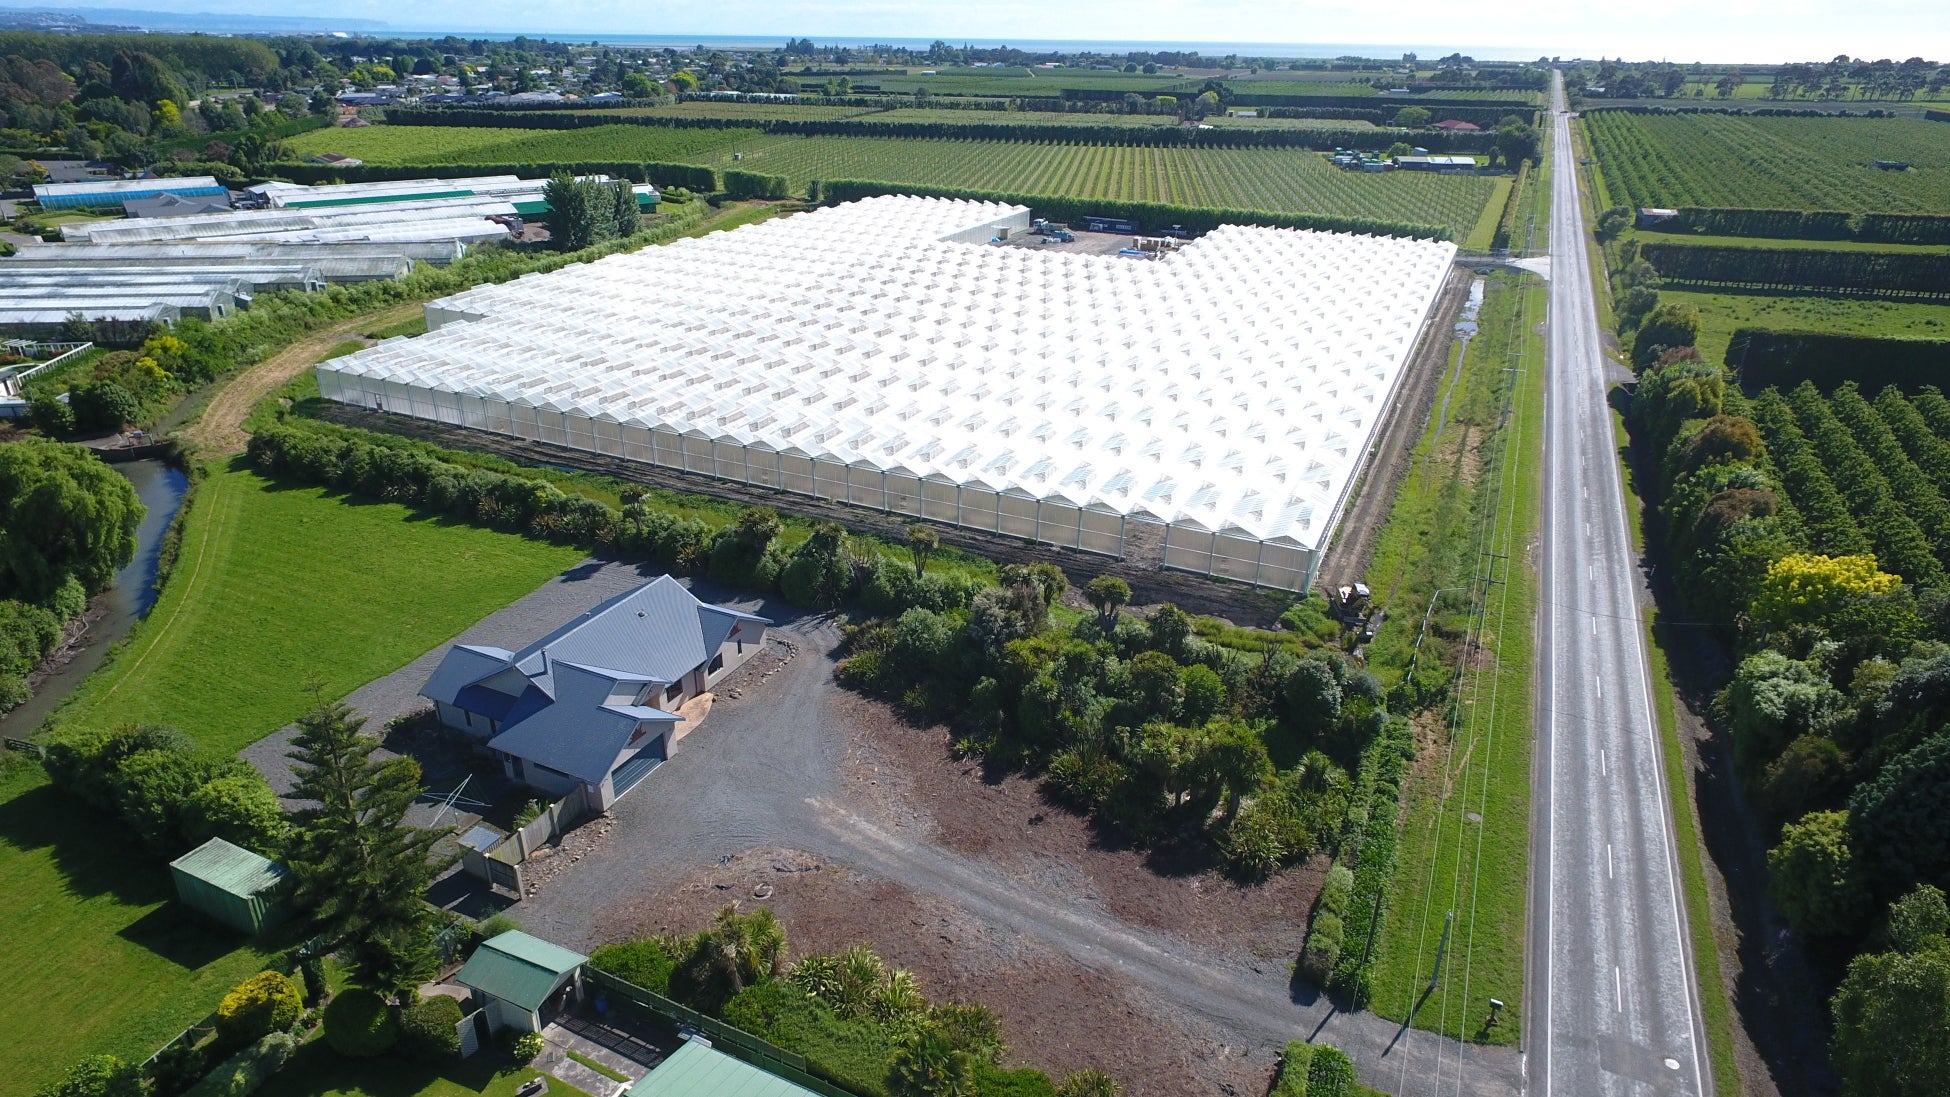 総合物流の枠を超え、ニュージーランドでスマート農業のサブ画像2_農業先進国オランダ式のガラスハウスを採用。JAS社が開発した高度環境制御システムを導入